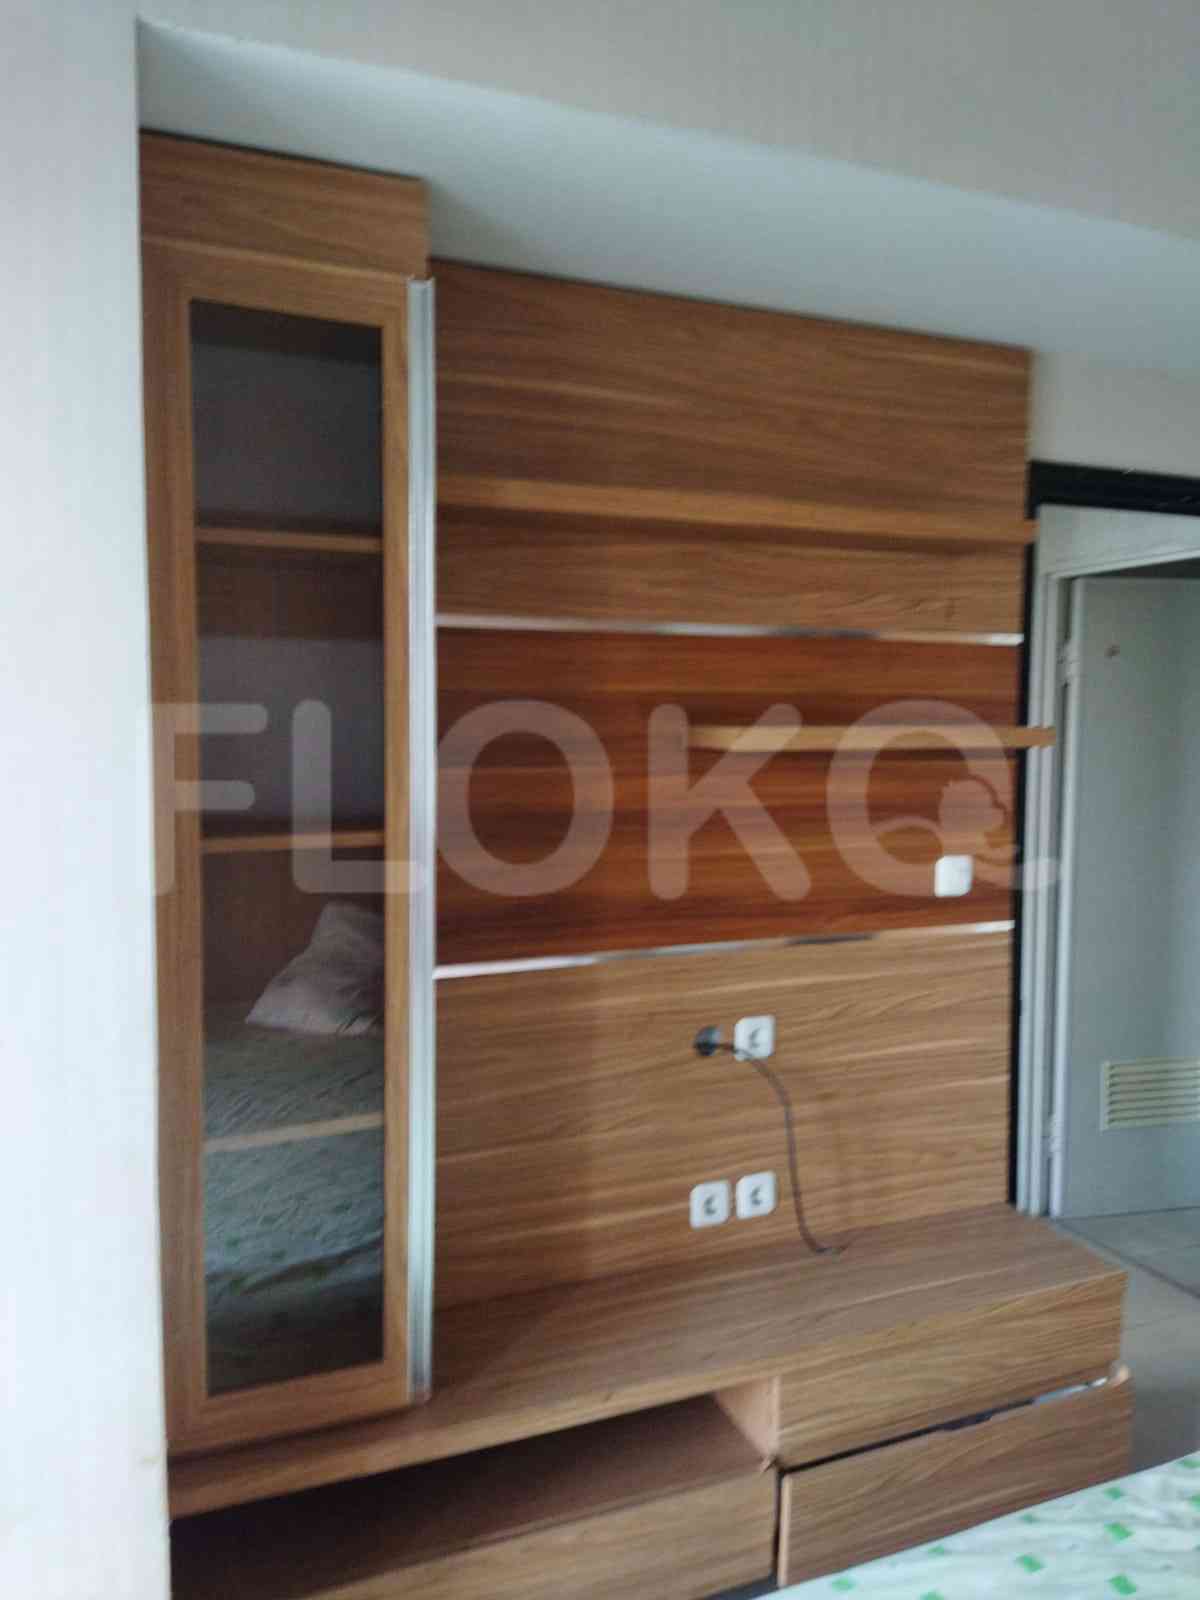 2 Bedroom on 1st Floor for Rent in Ambassade Residence - fkuf15 6